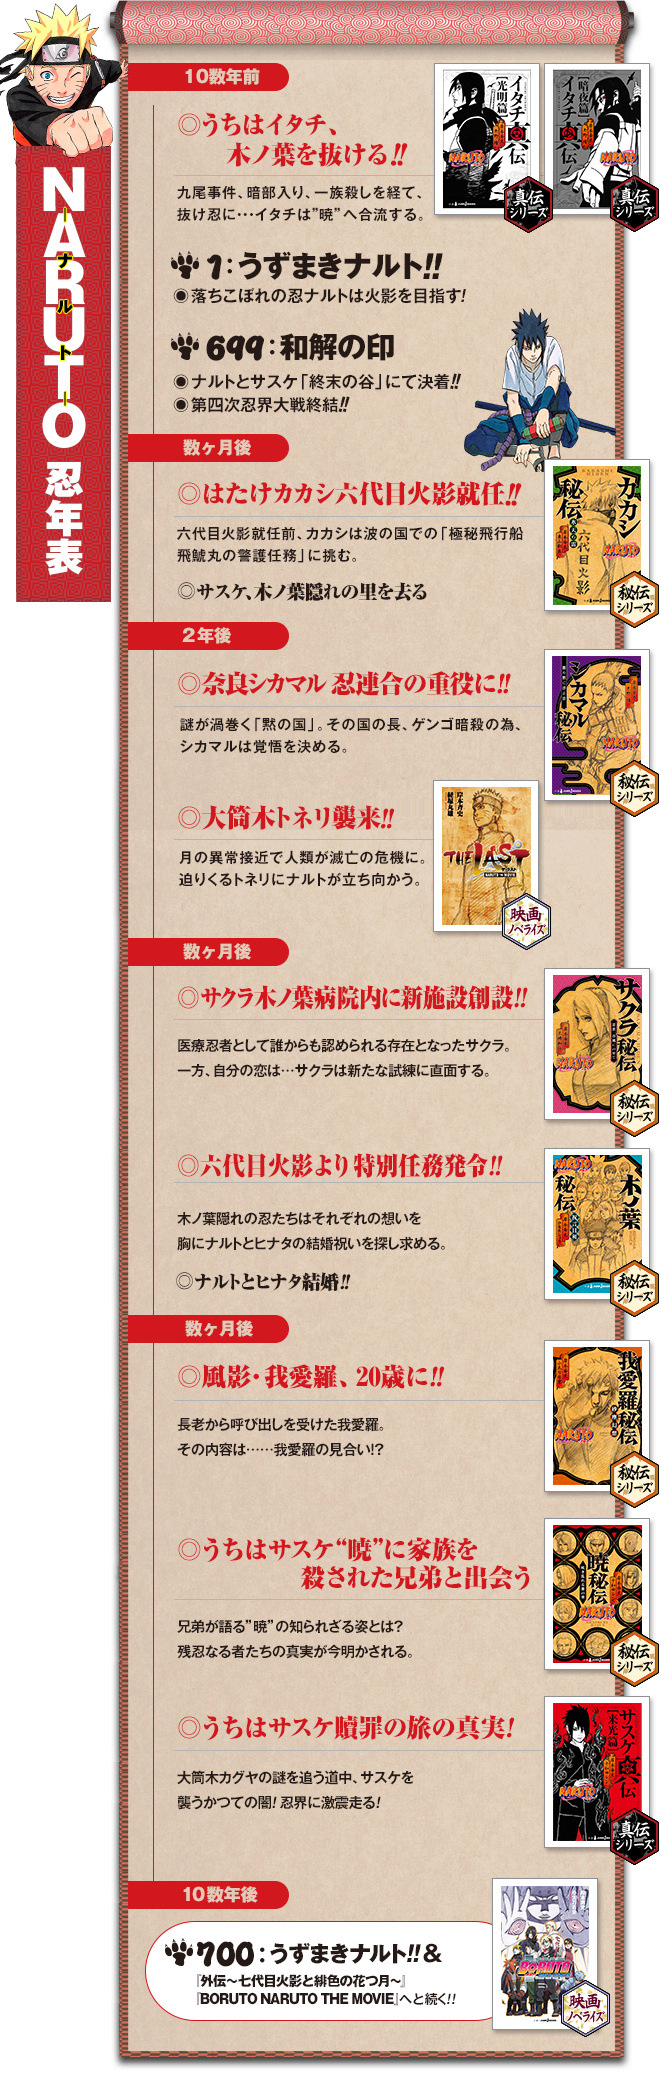 Mito: Minato foi o melhor no Exame Chunnin de Konoha - Página 2 Novels10